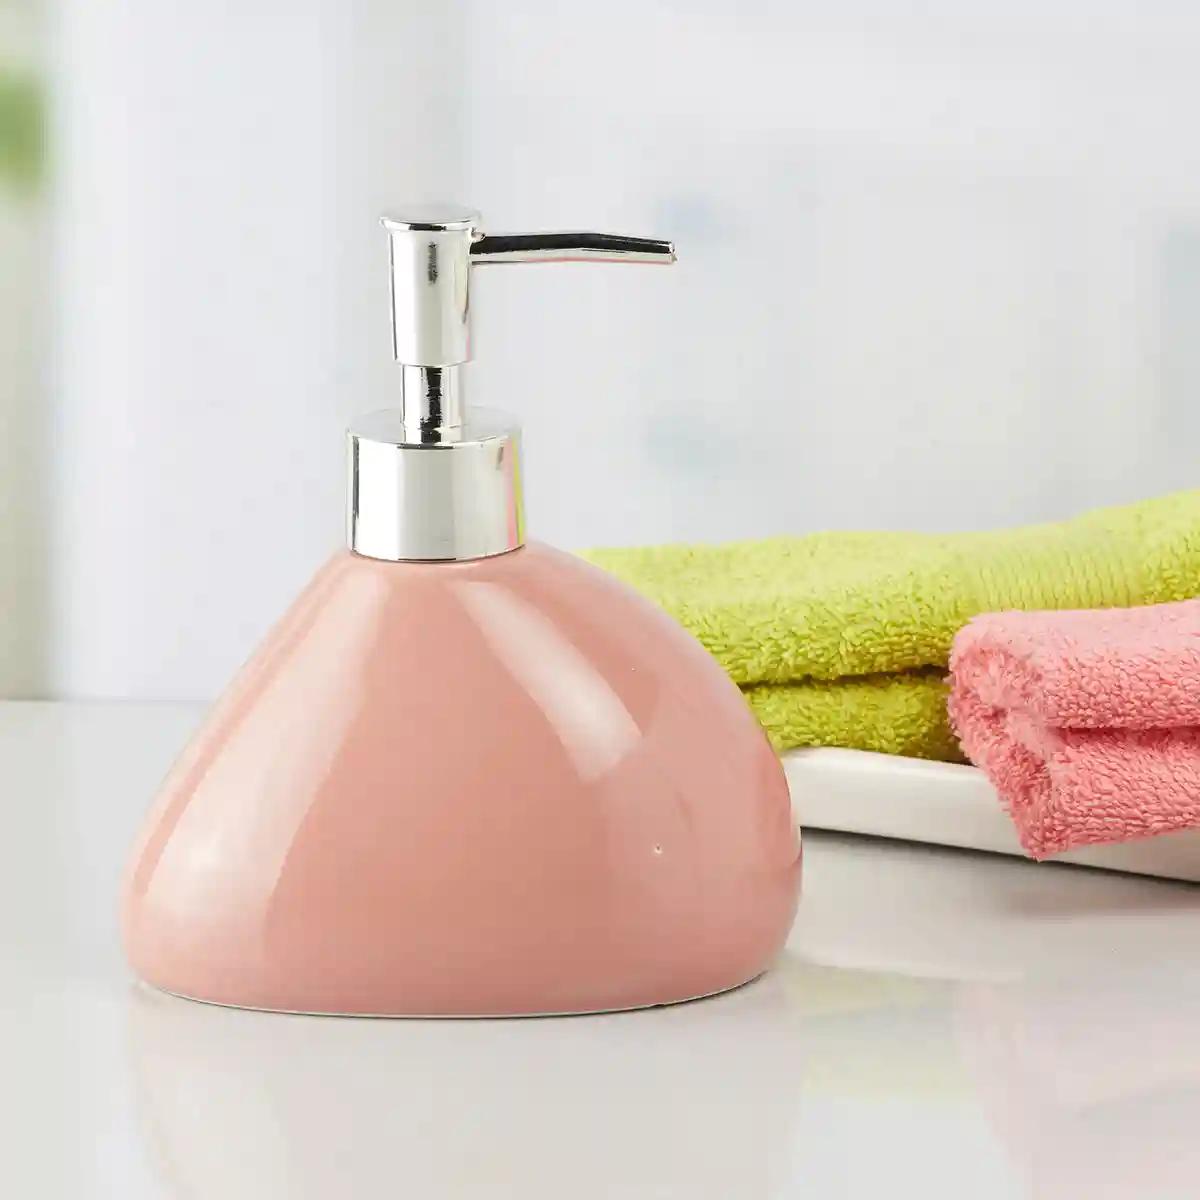 Kookee Ceramic Soap Dispenser for Bathroom handwash, refillable pump bottle for Kitchen hand wash basin, Set of 2 - Pink (7967)